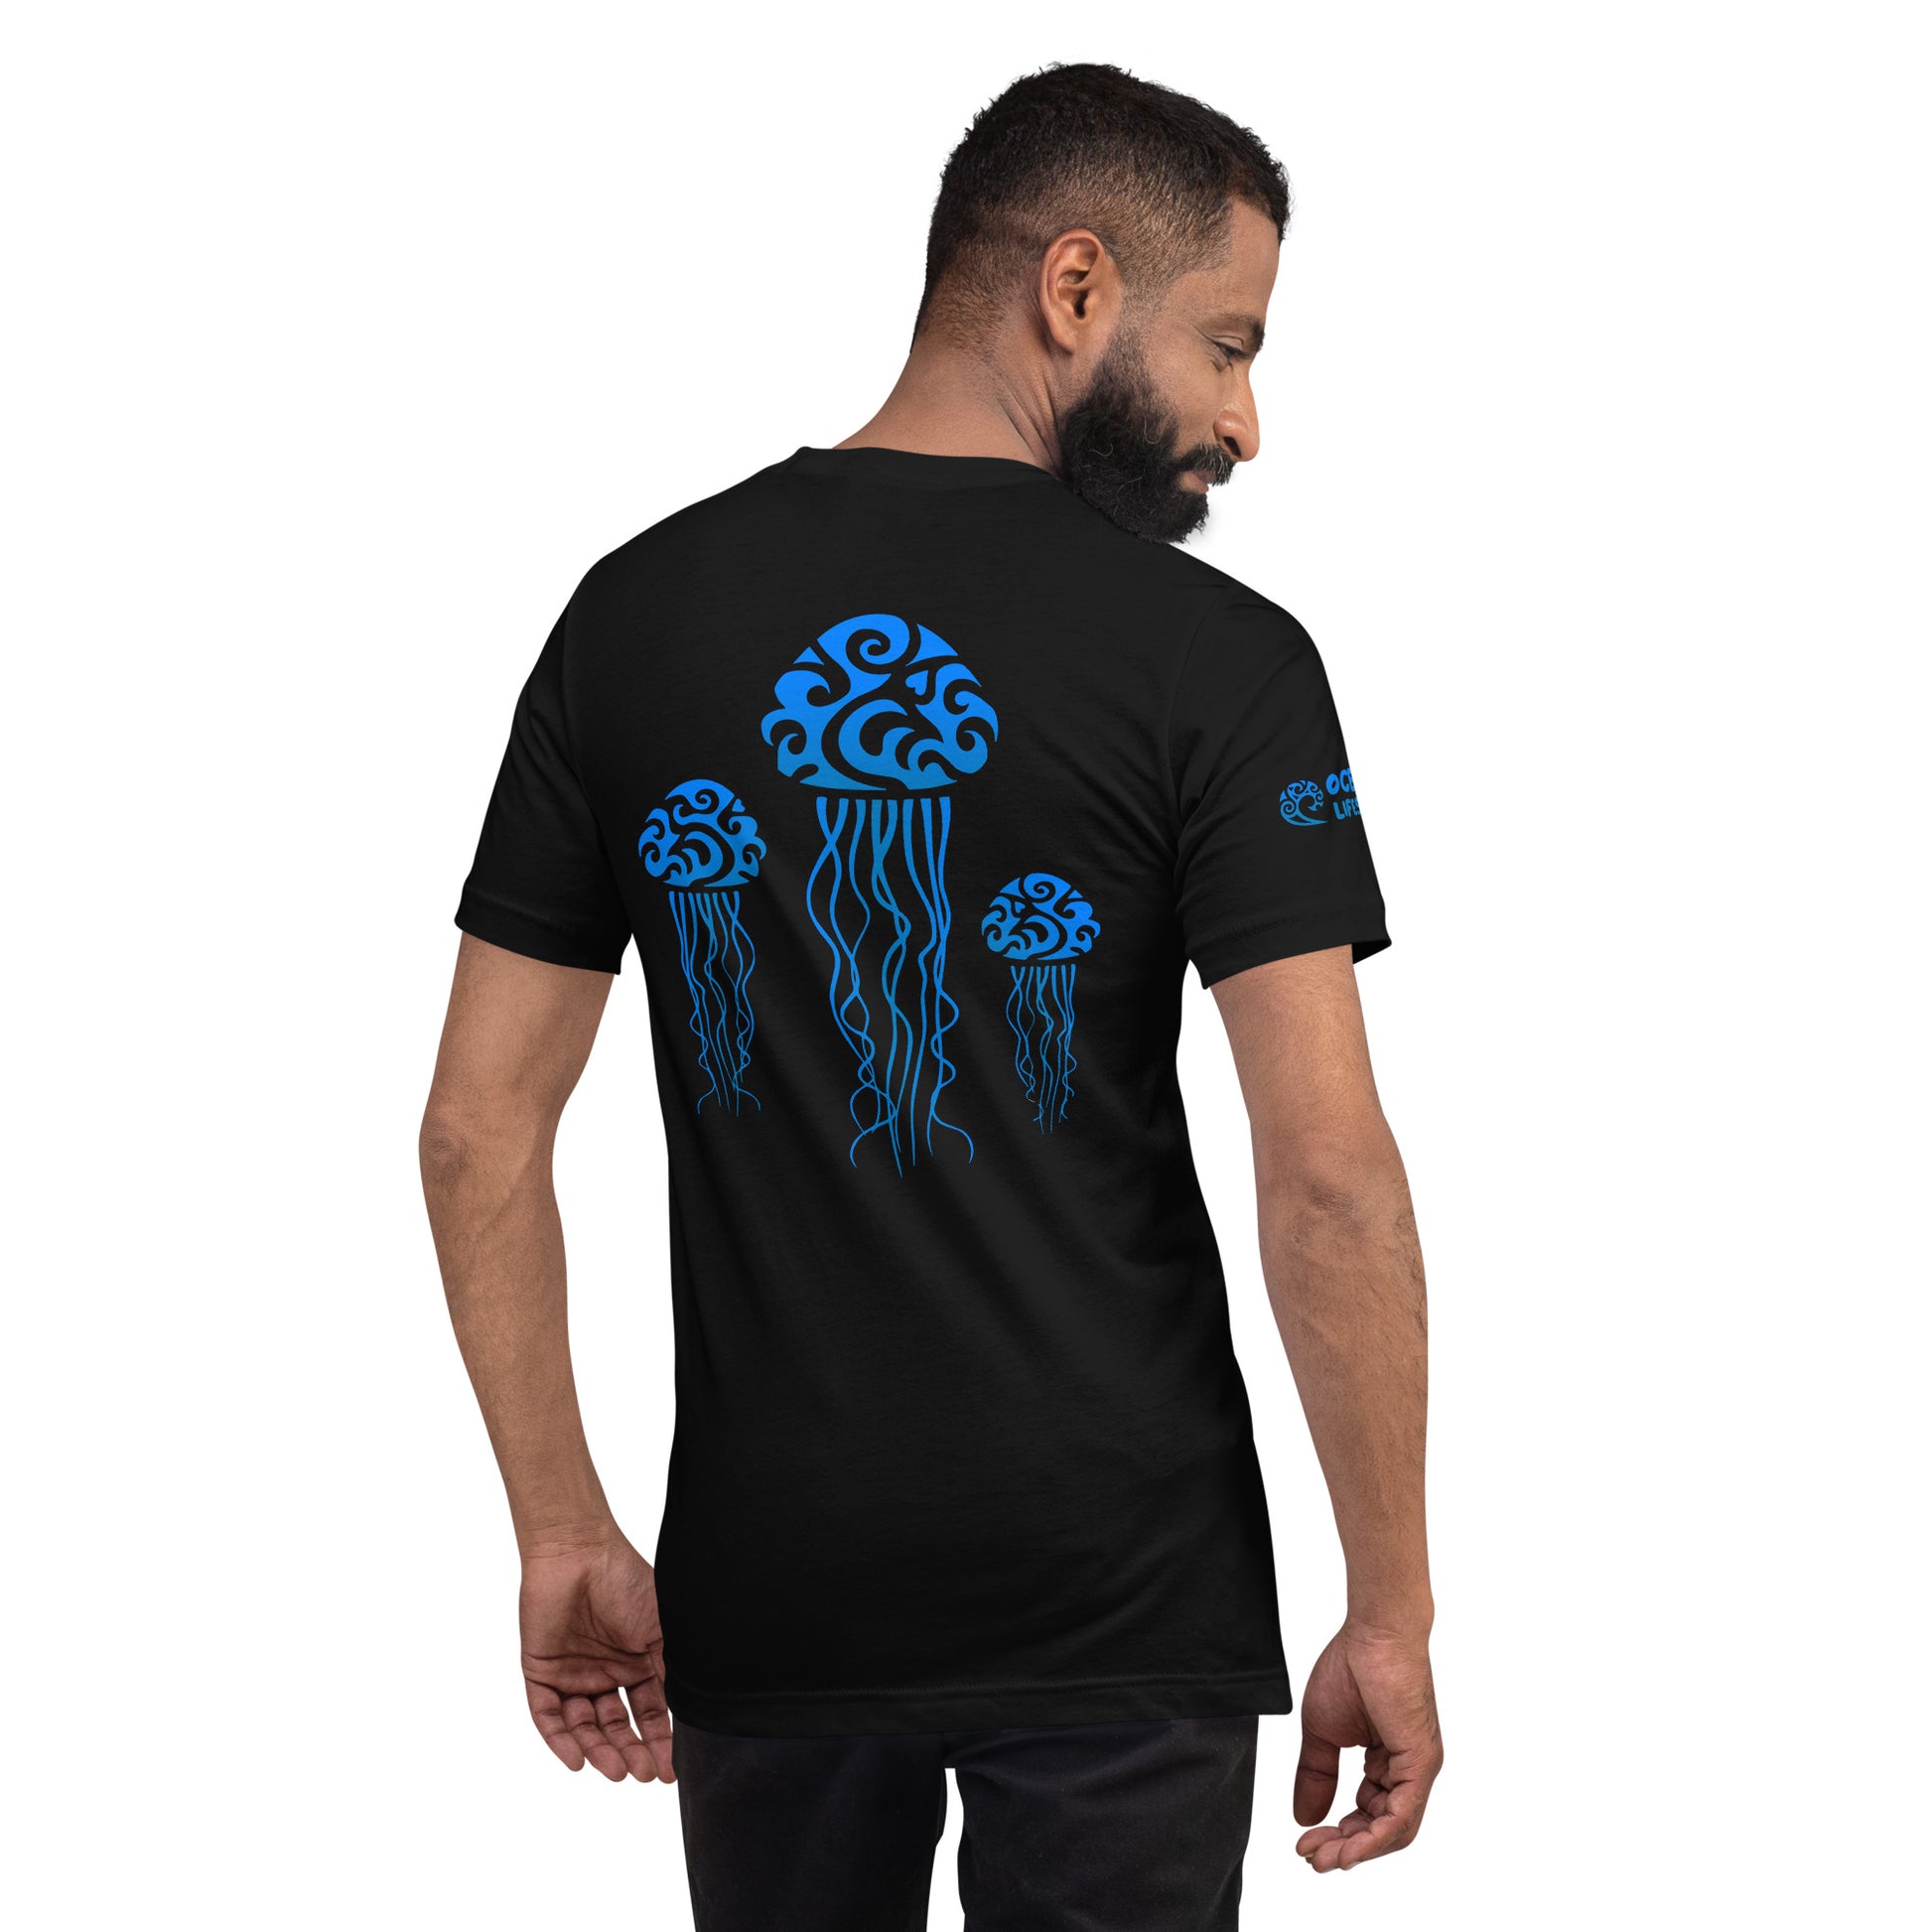 Polynesian T-shirt Jellyfish Tribal Samoan For Men and Women Back Blue on Black